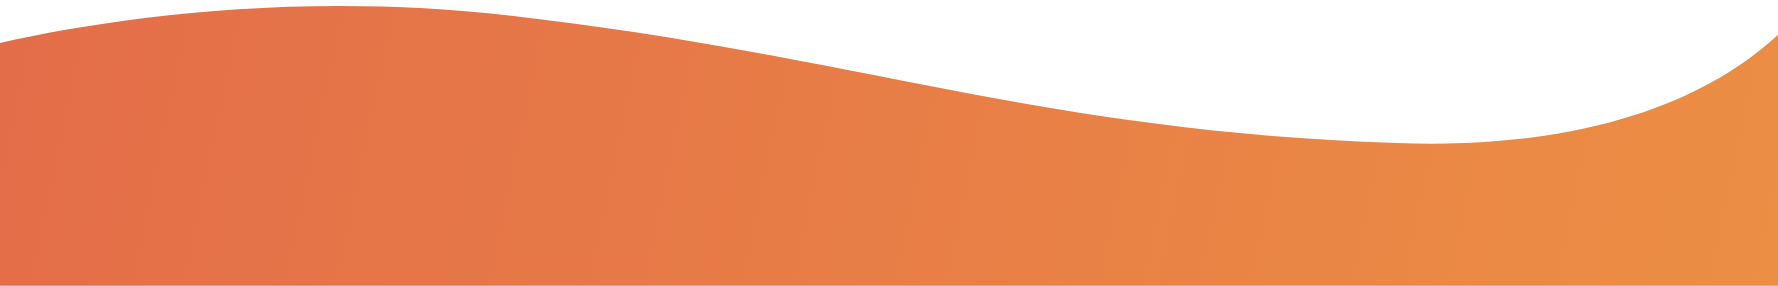 Orange bottom curve